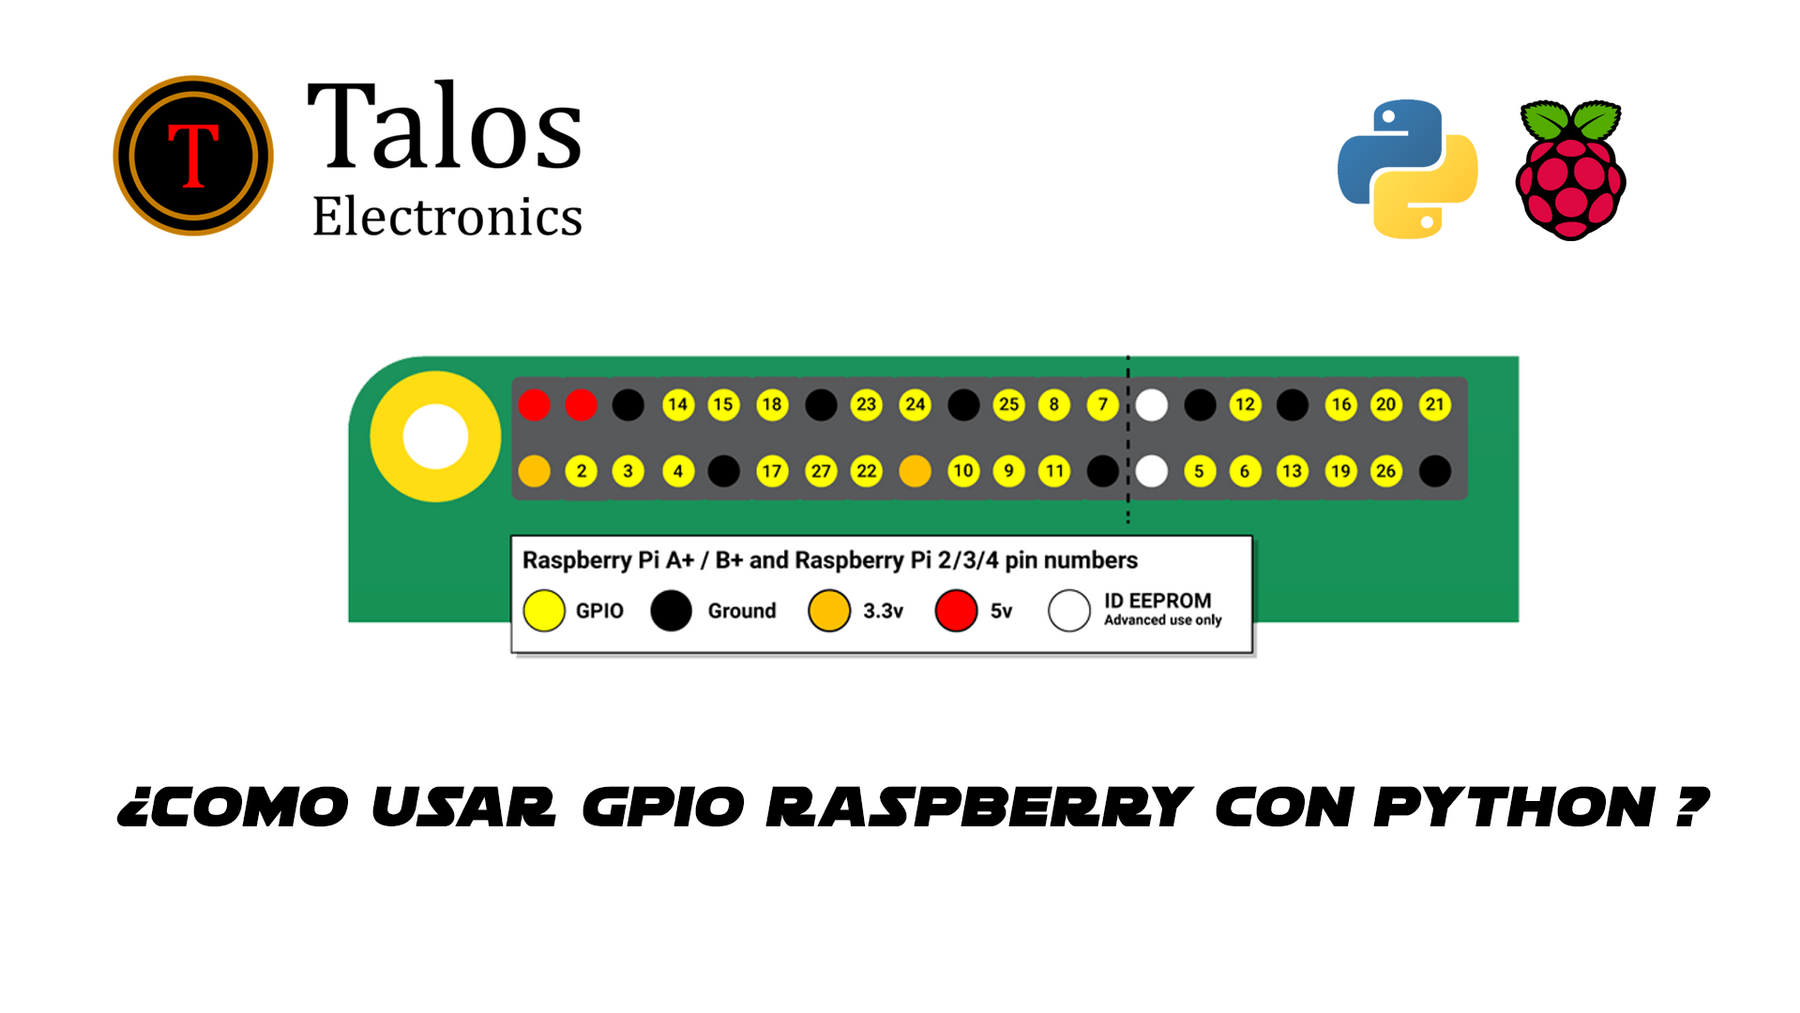 ¿Como usar GPIO raspberry con python ?